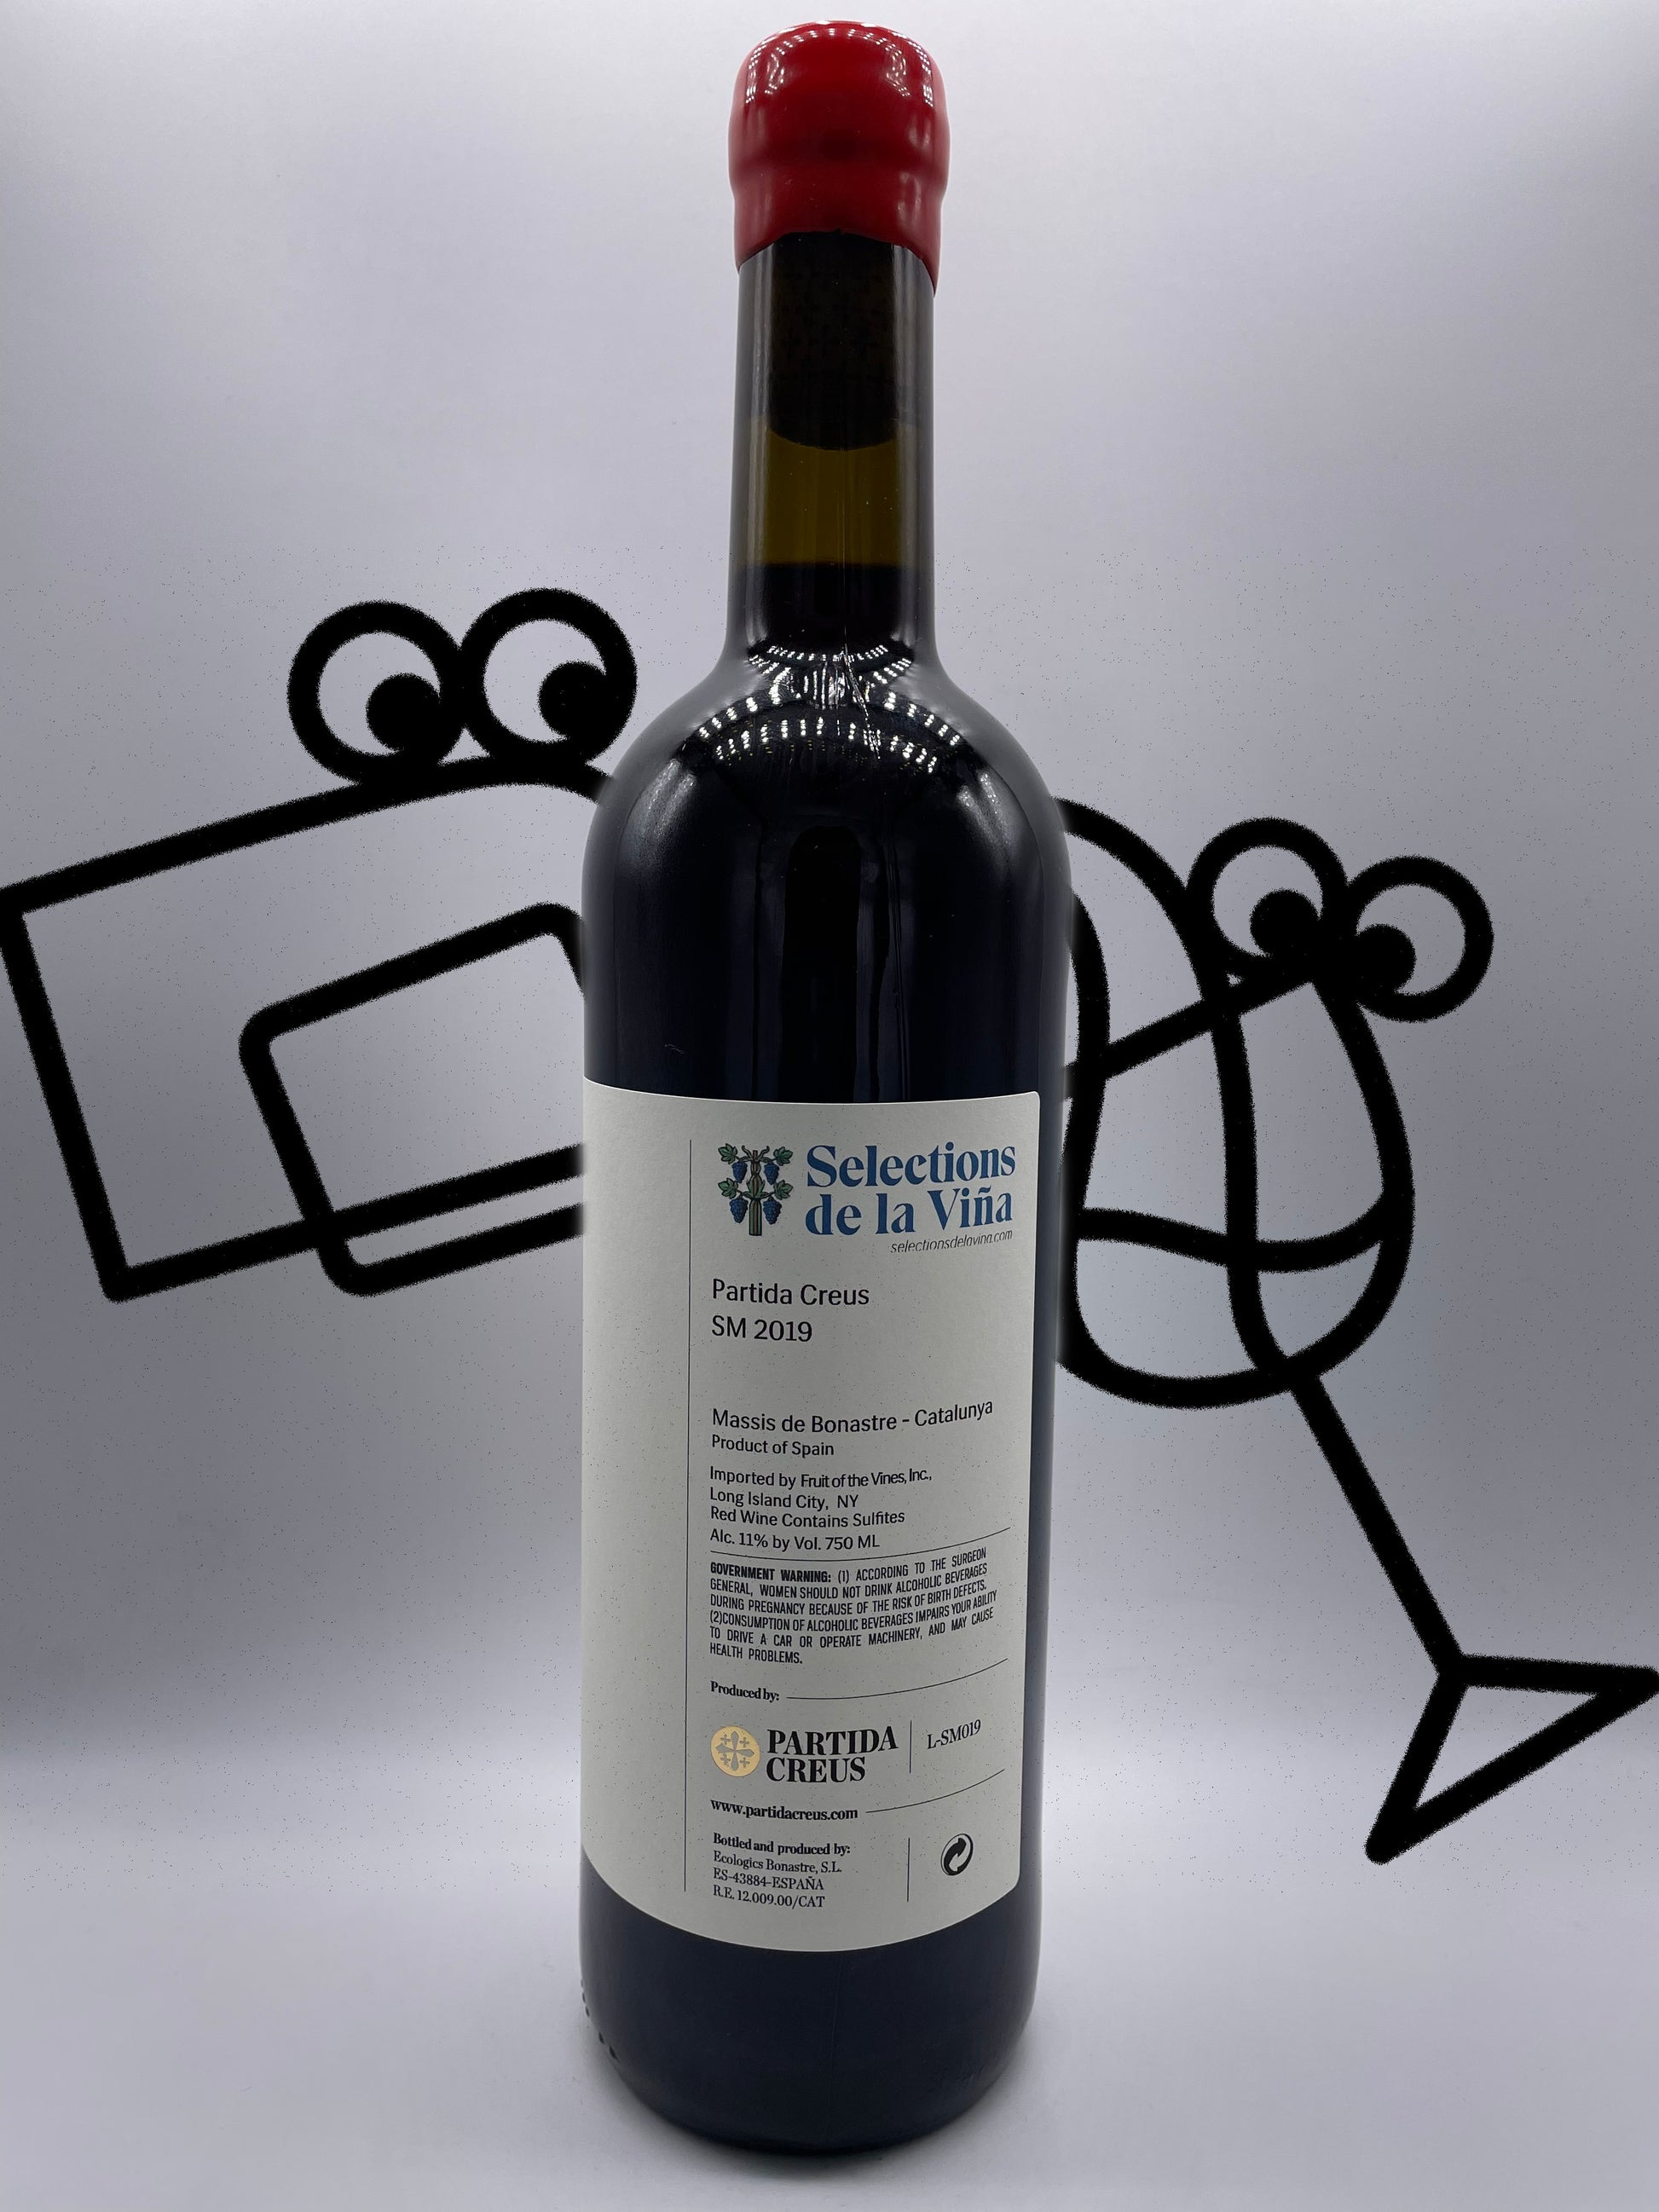 Partida Creus 'S M' 2019 Catalonia, Spain - Williston Park Wines & Spirits